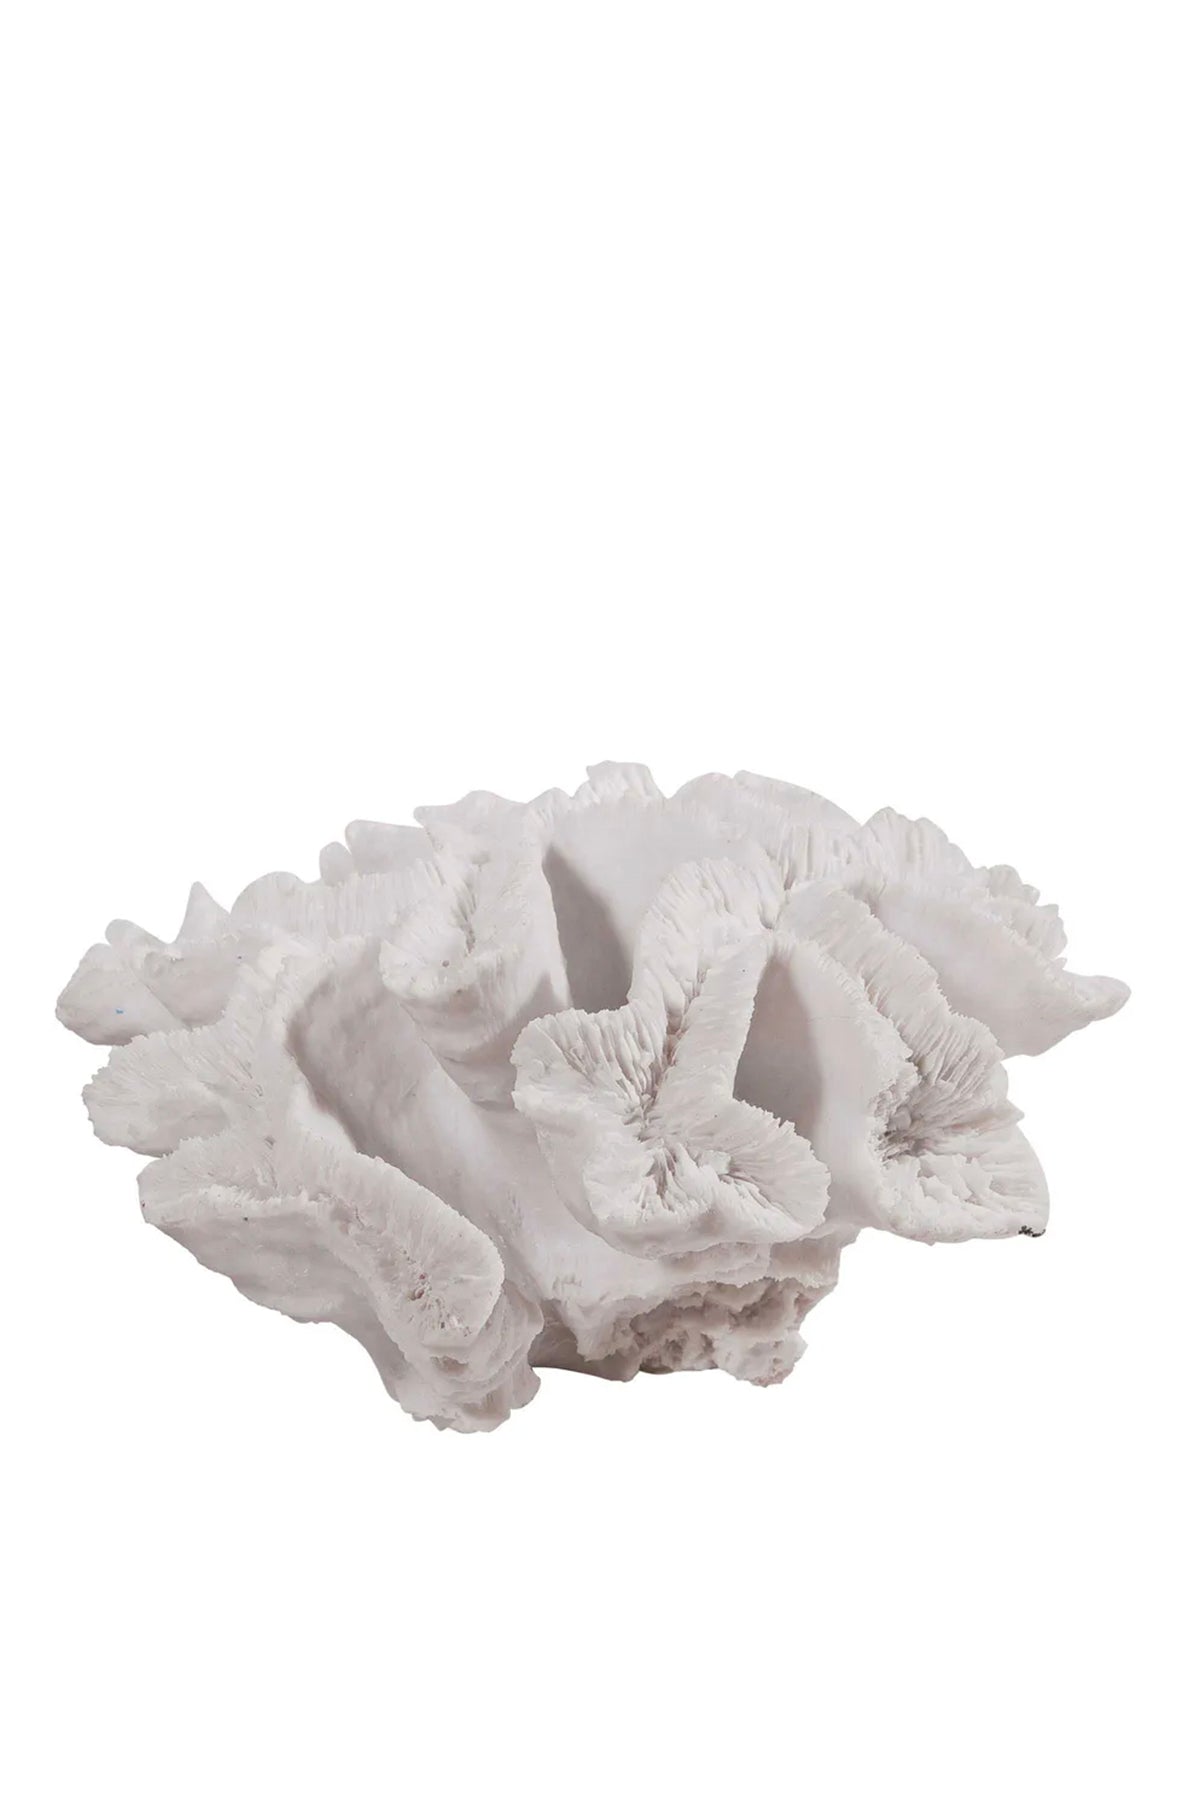 Waiheke Coral Sculpture White